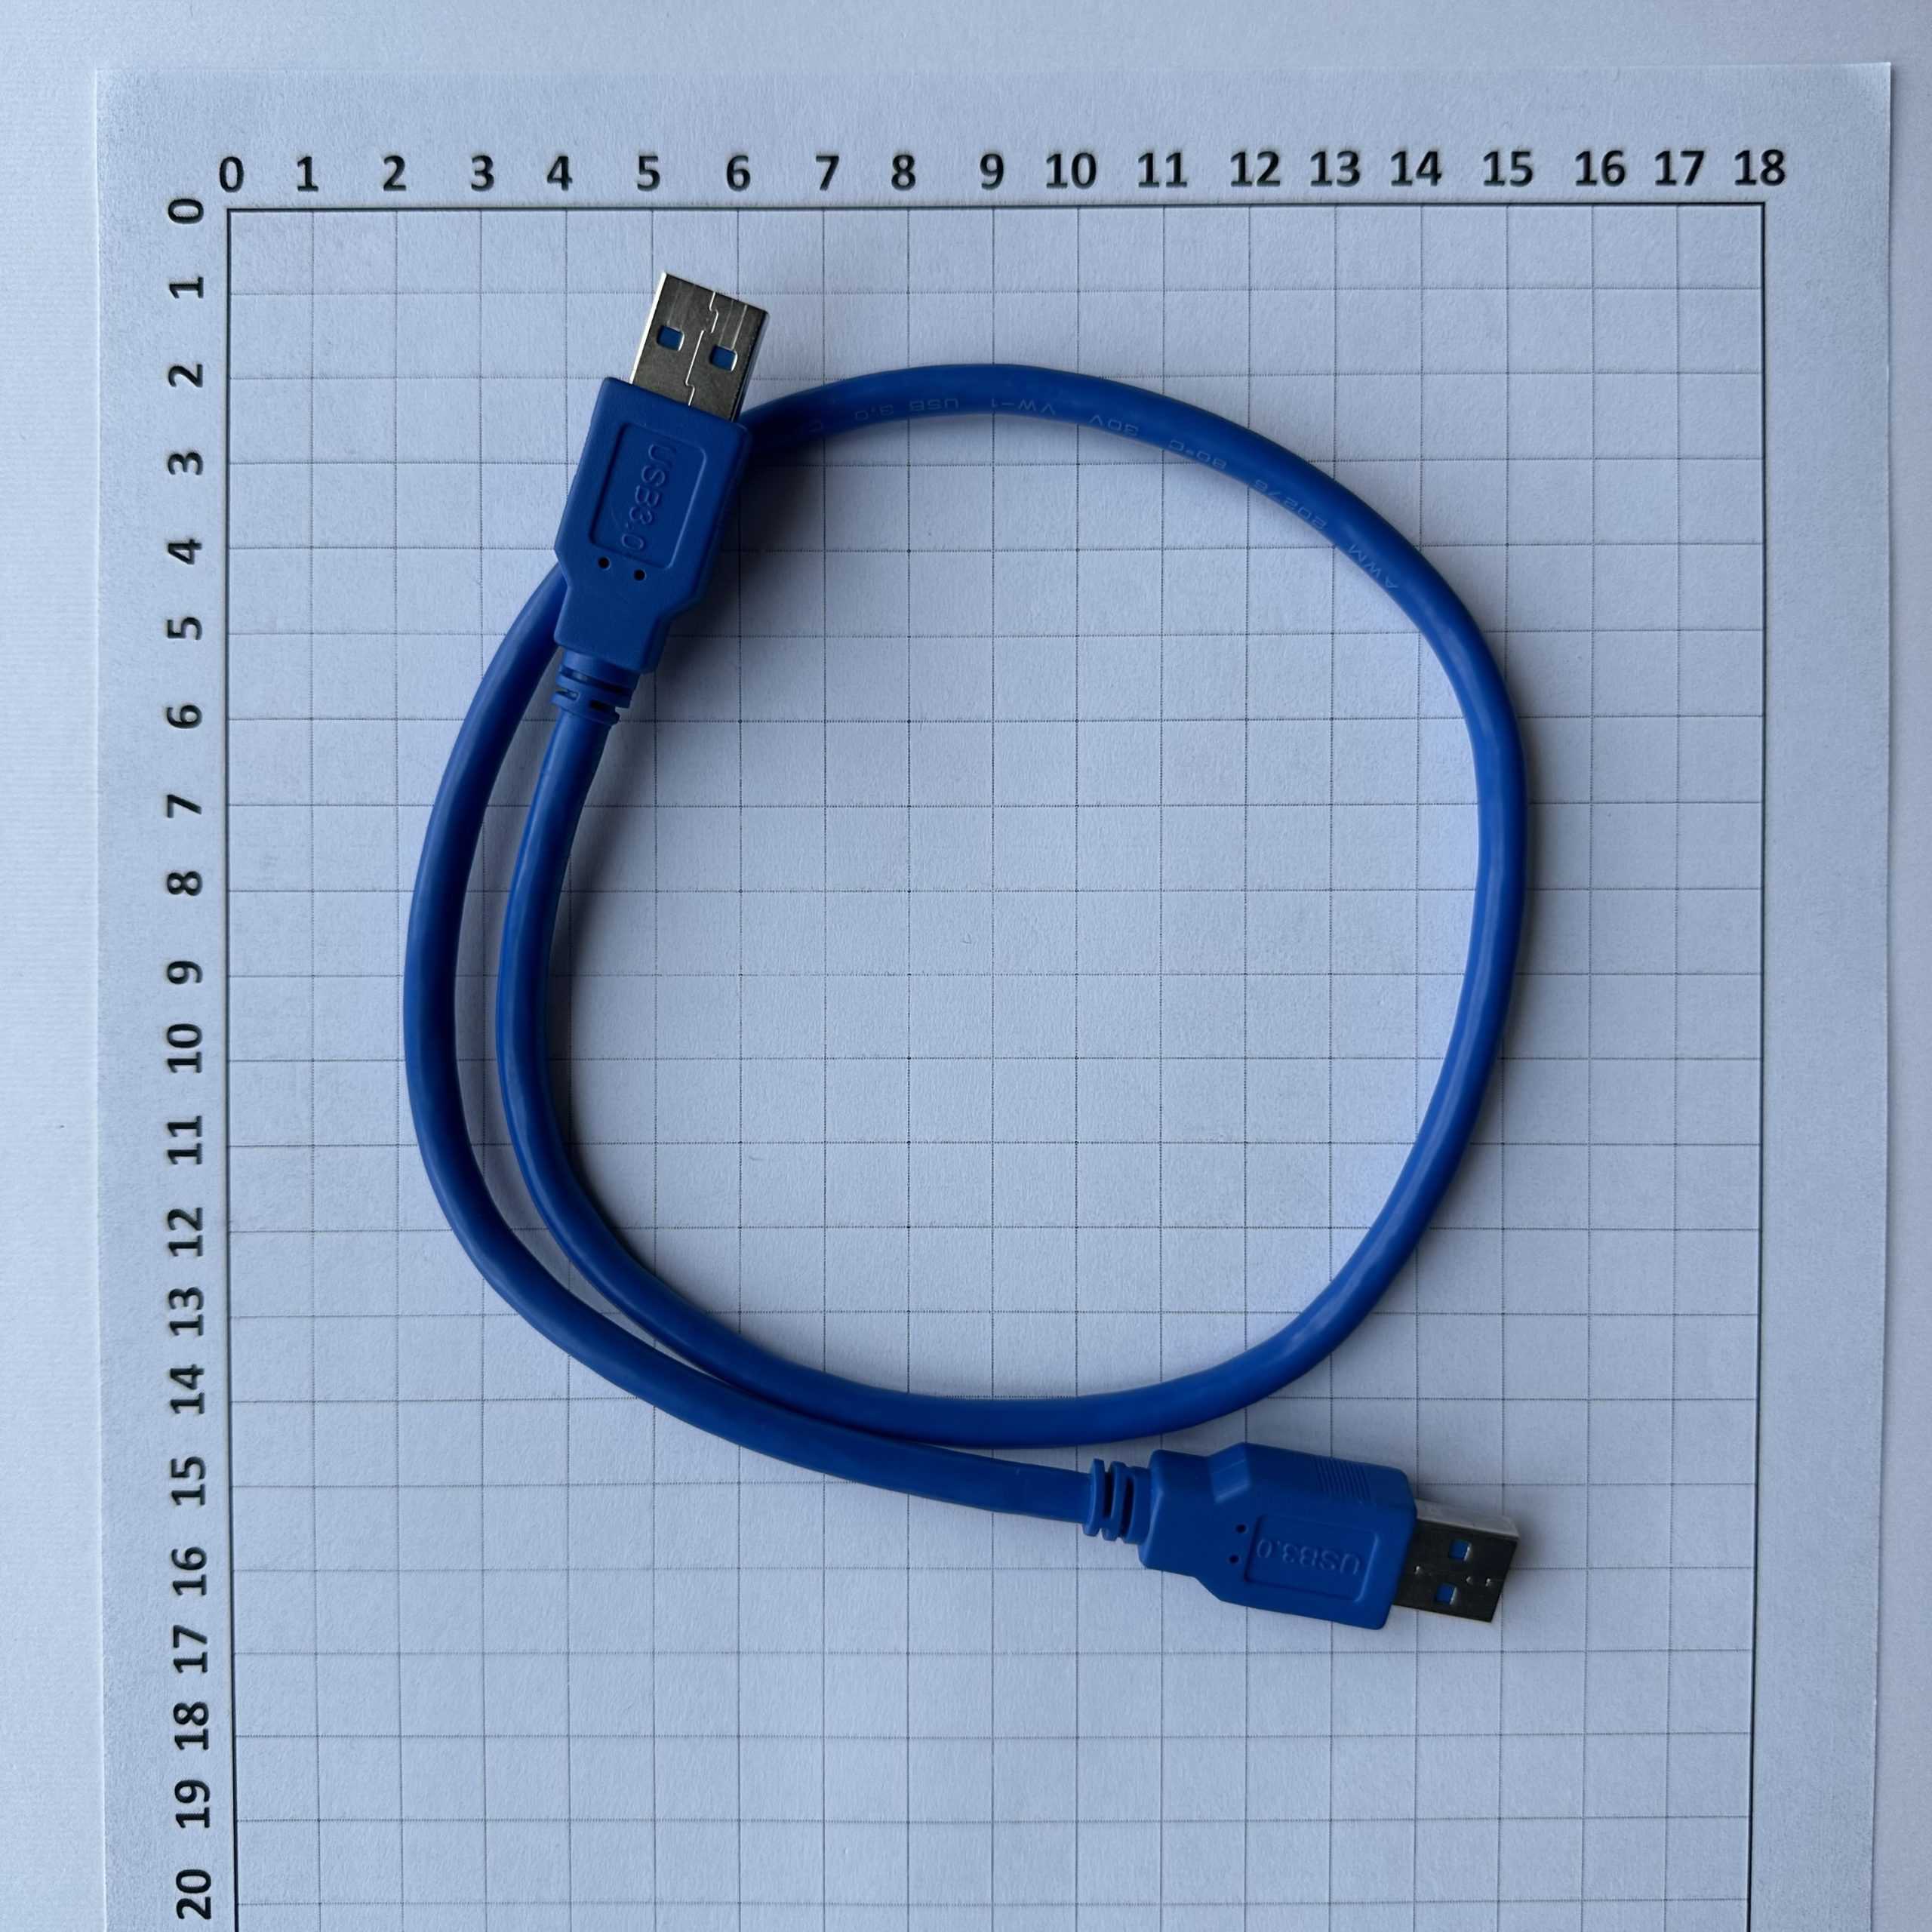 کابل دو سر USB 3.0 با متراژ 50 سانتی متر